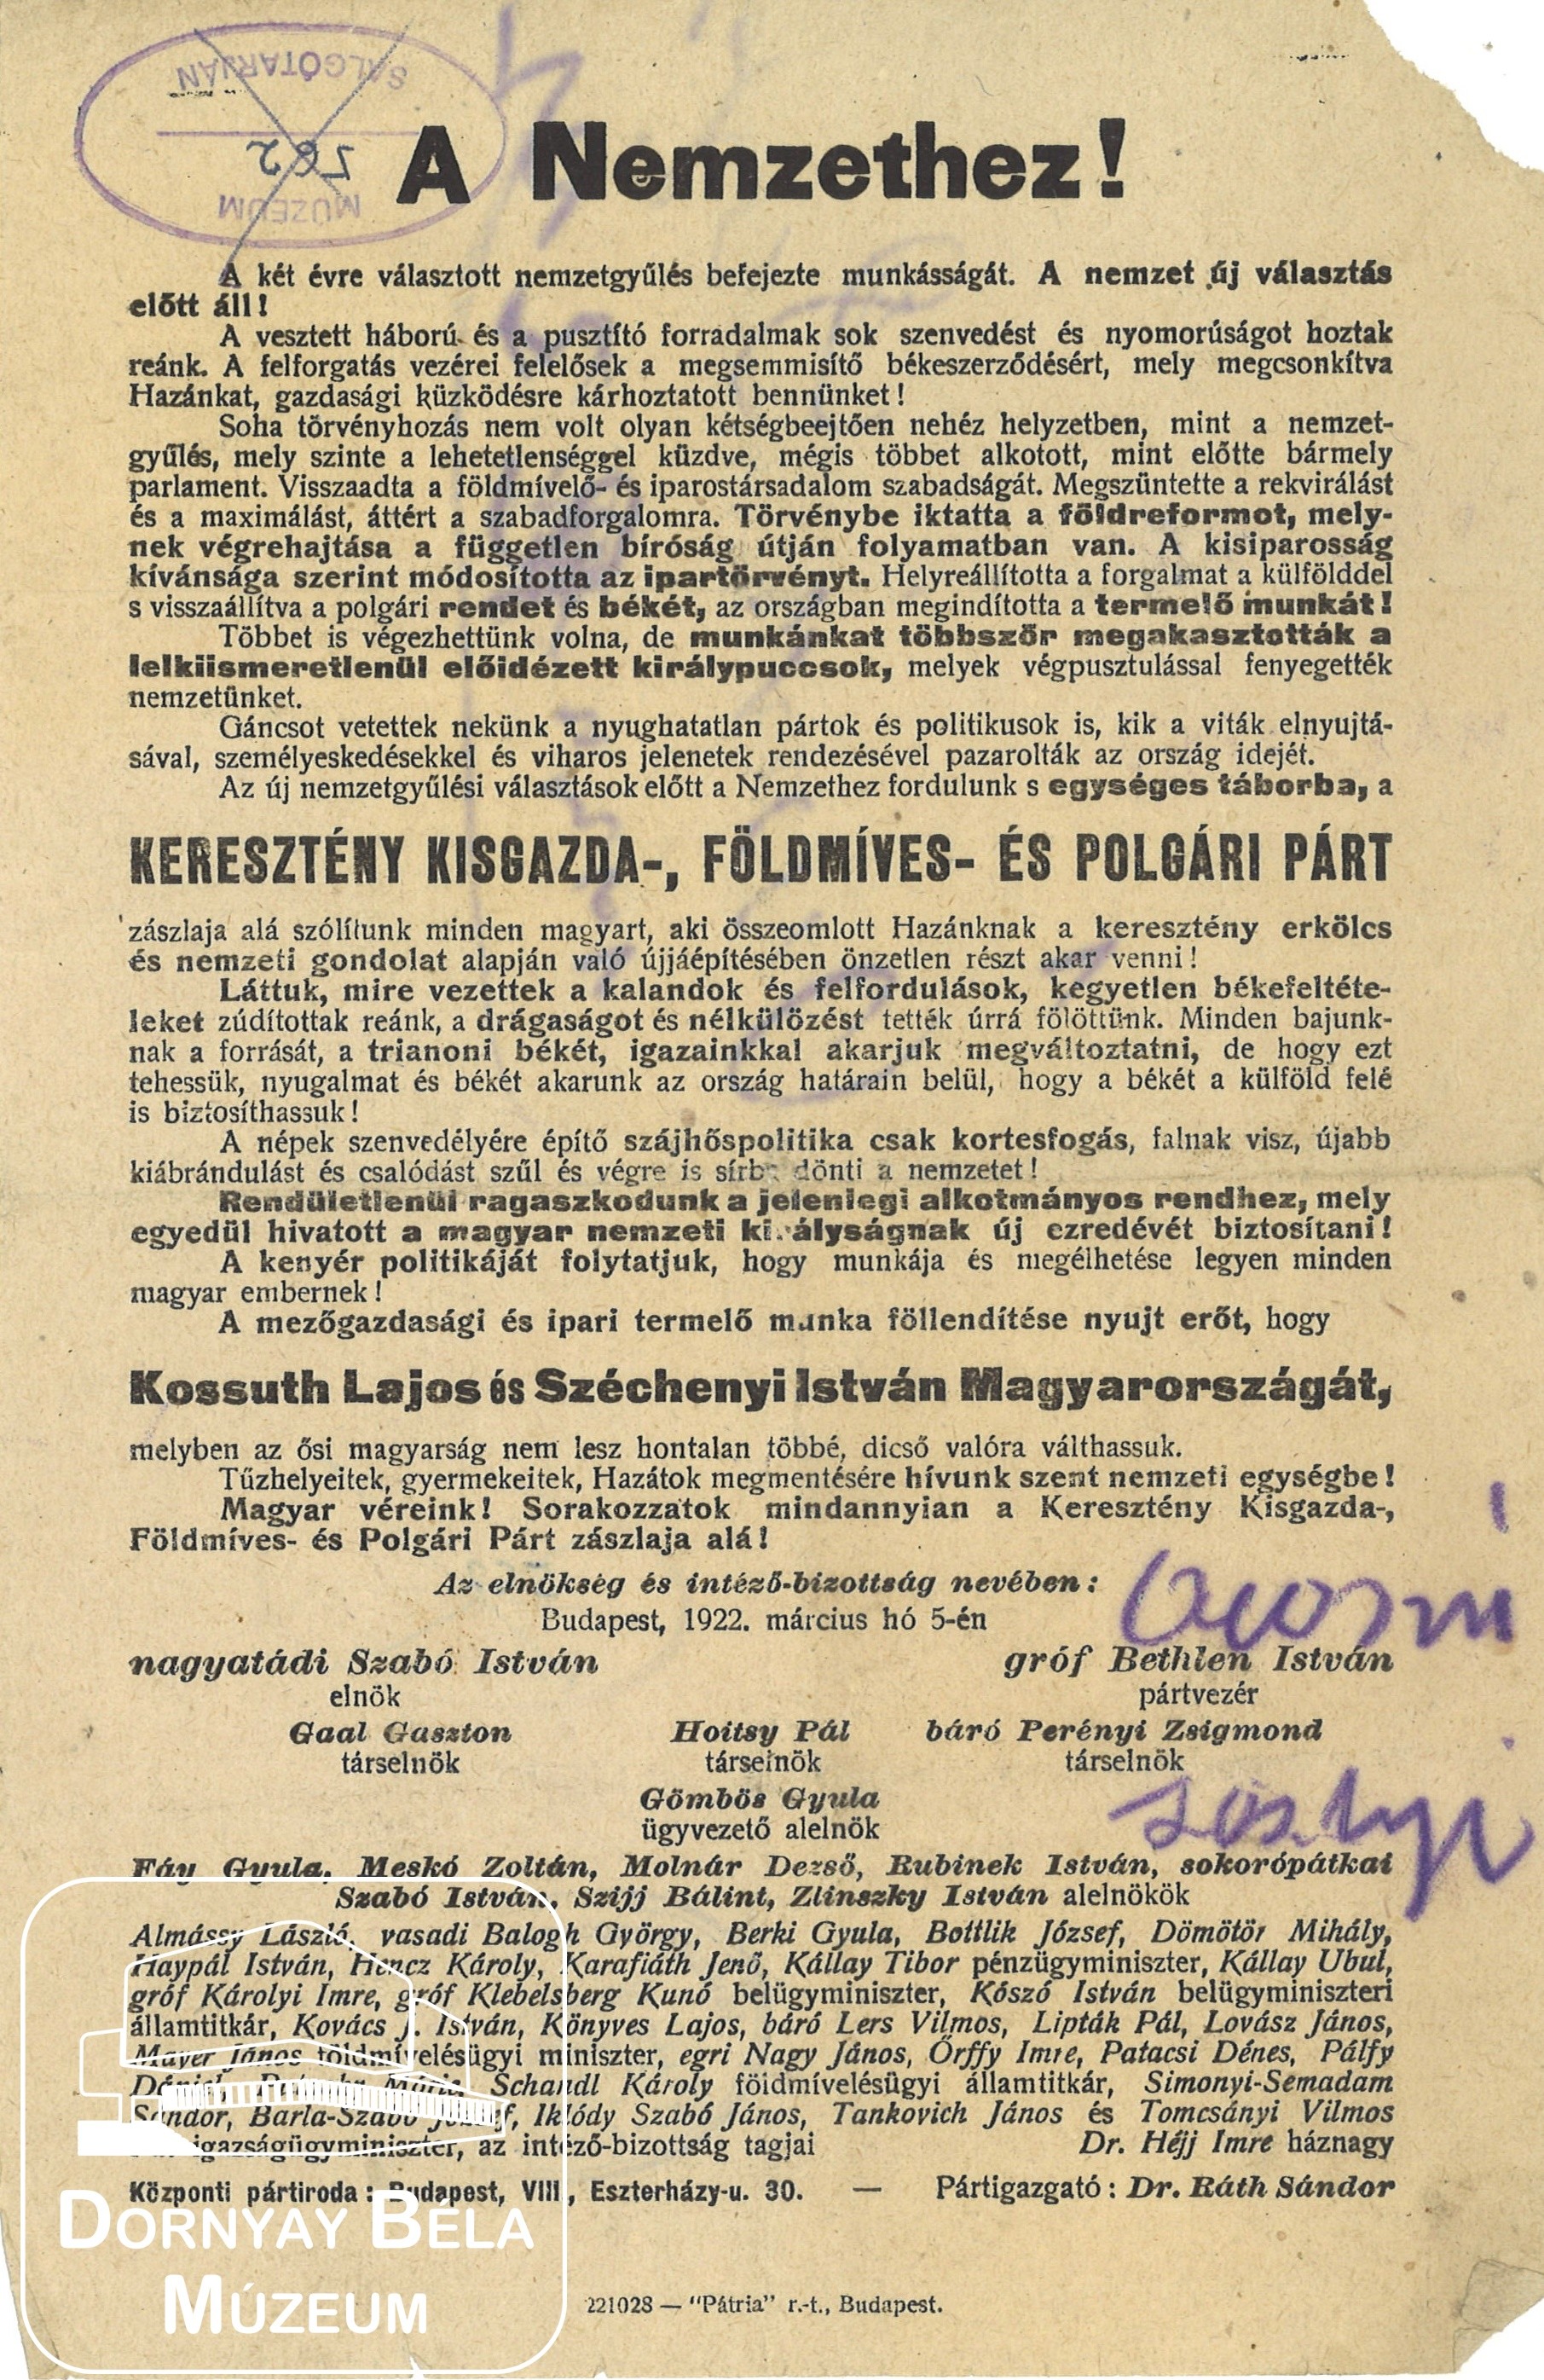 A Keresztény-Kisgazda-Földműves és Polgári Pért felhívása a nemzethez. (Dornyay Béla Múzeum, Salgótarján CC BY-NC-SA)